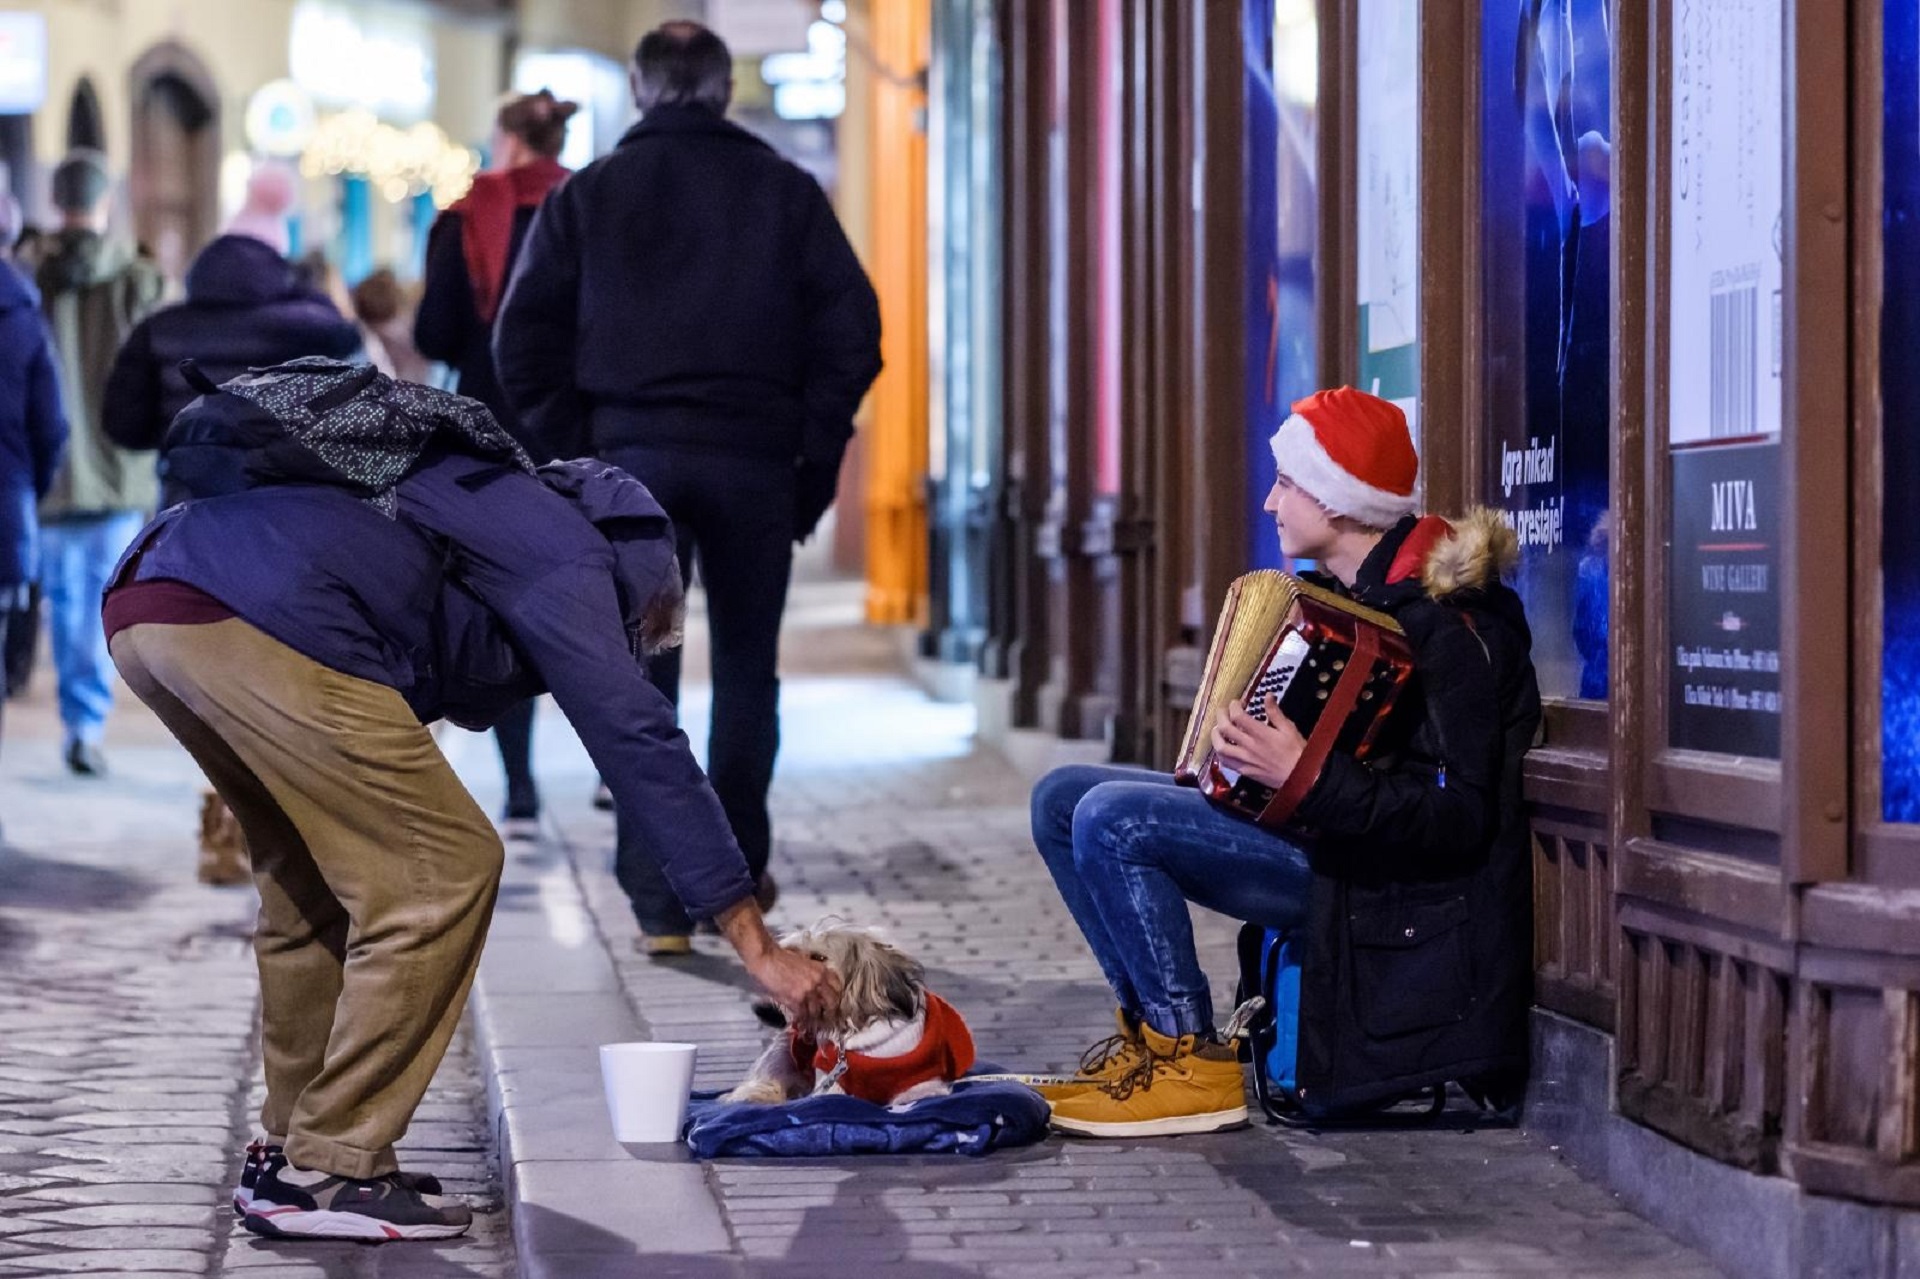 17.12.2019., Zagreb -Adventski ugodjaj u Zagrebu. Radiceva ulica. 
Photo: Tomislav Miletic/PIXSELL